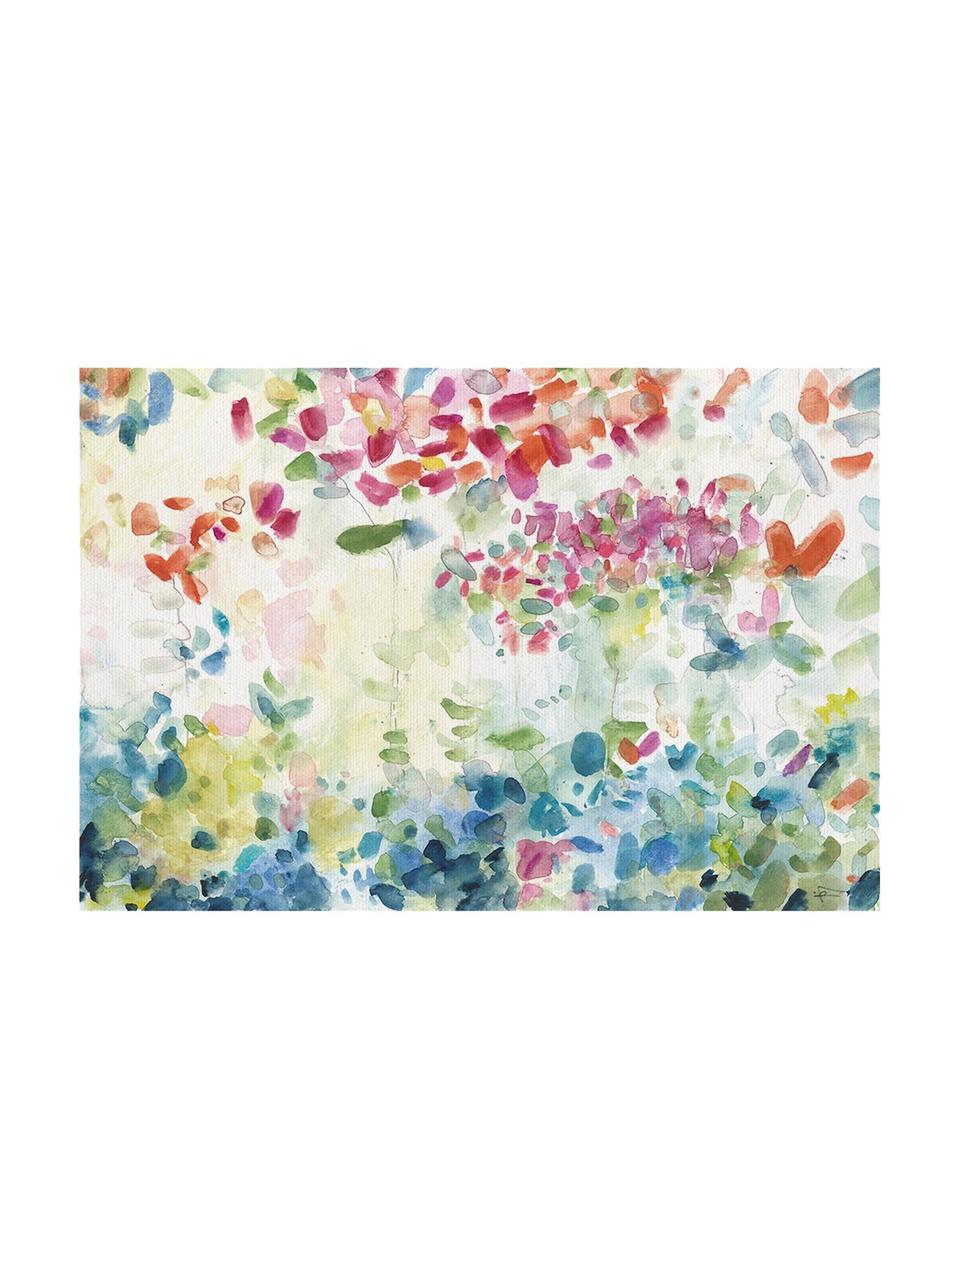 Impresión sobre lienzo Hortensias, Multicolor, An 60 x Al 40 cm